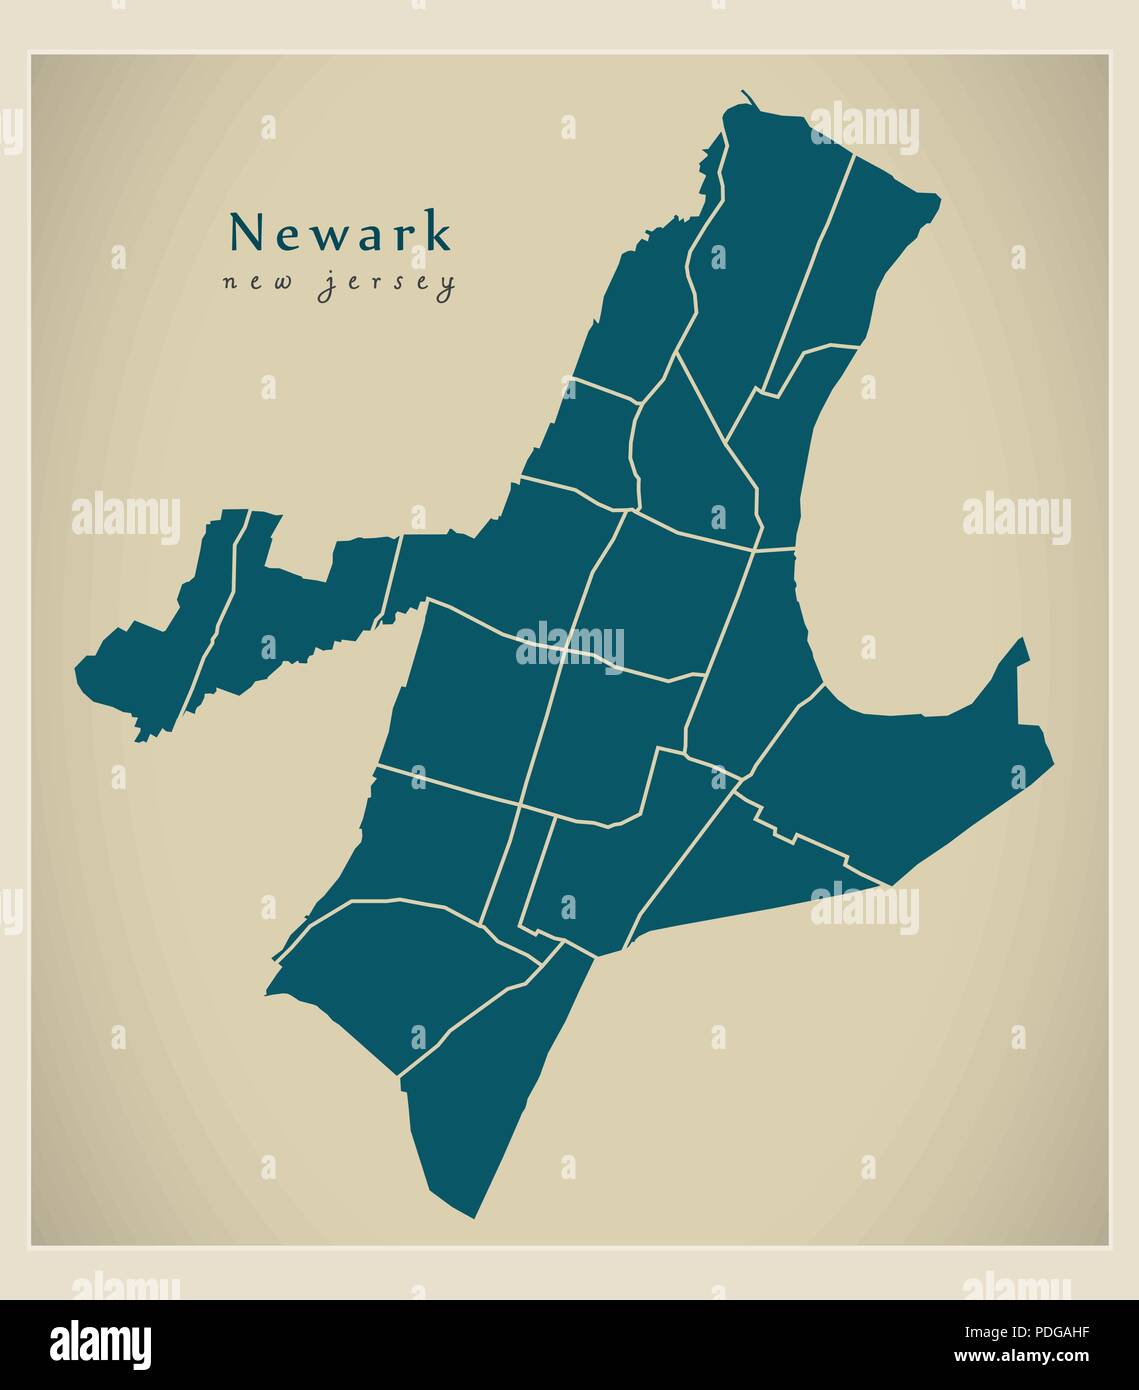 Plan de la ville moderne - Newark New Jersey ville des USA par les quartiers Illustration de Vecteur